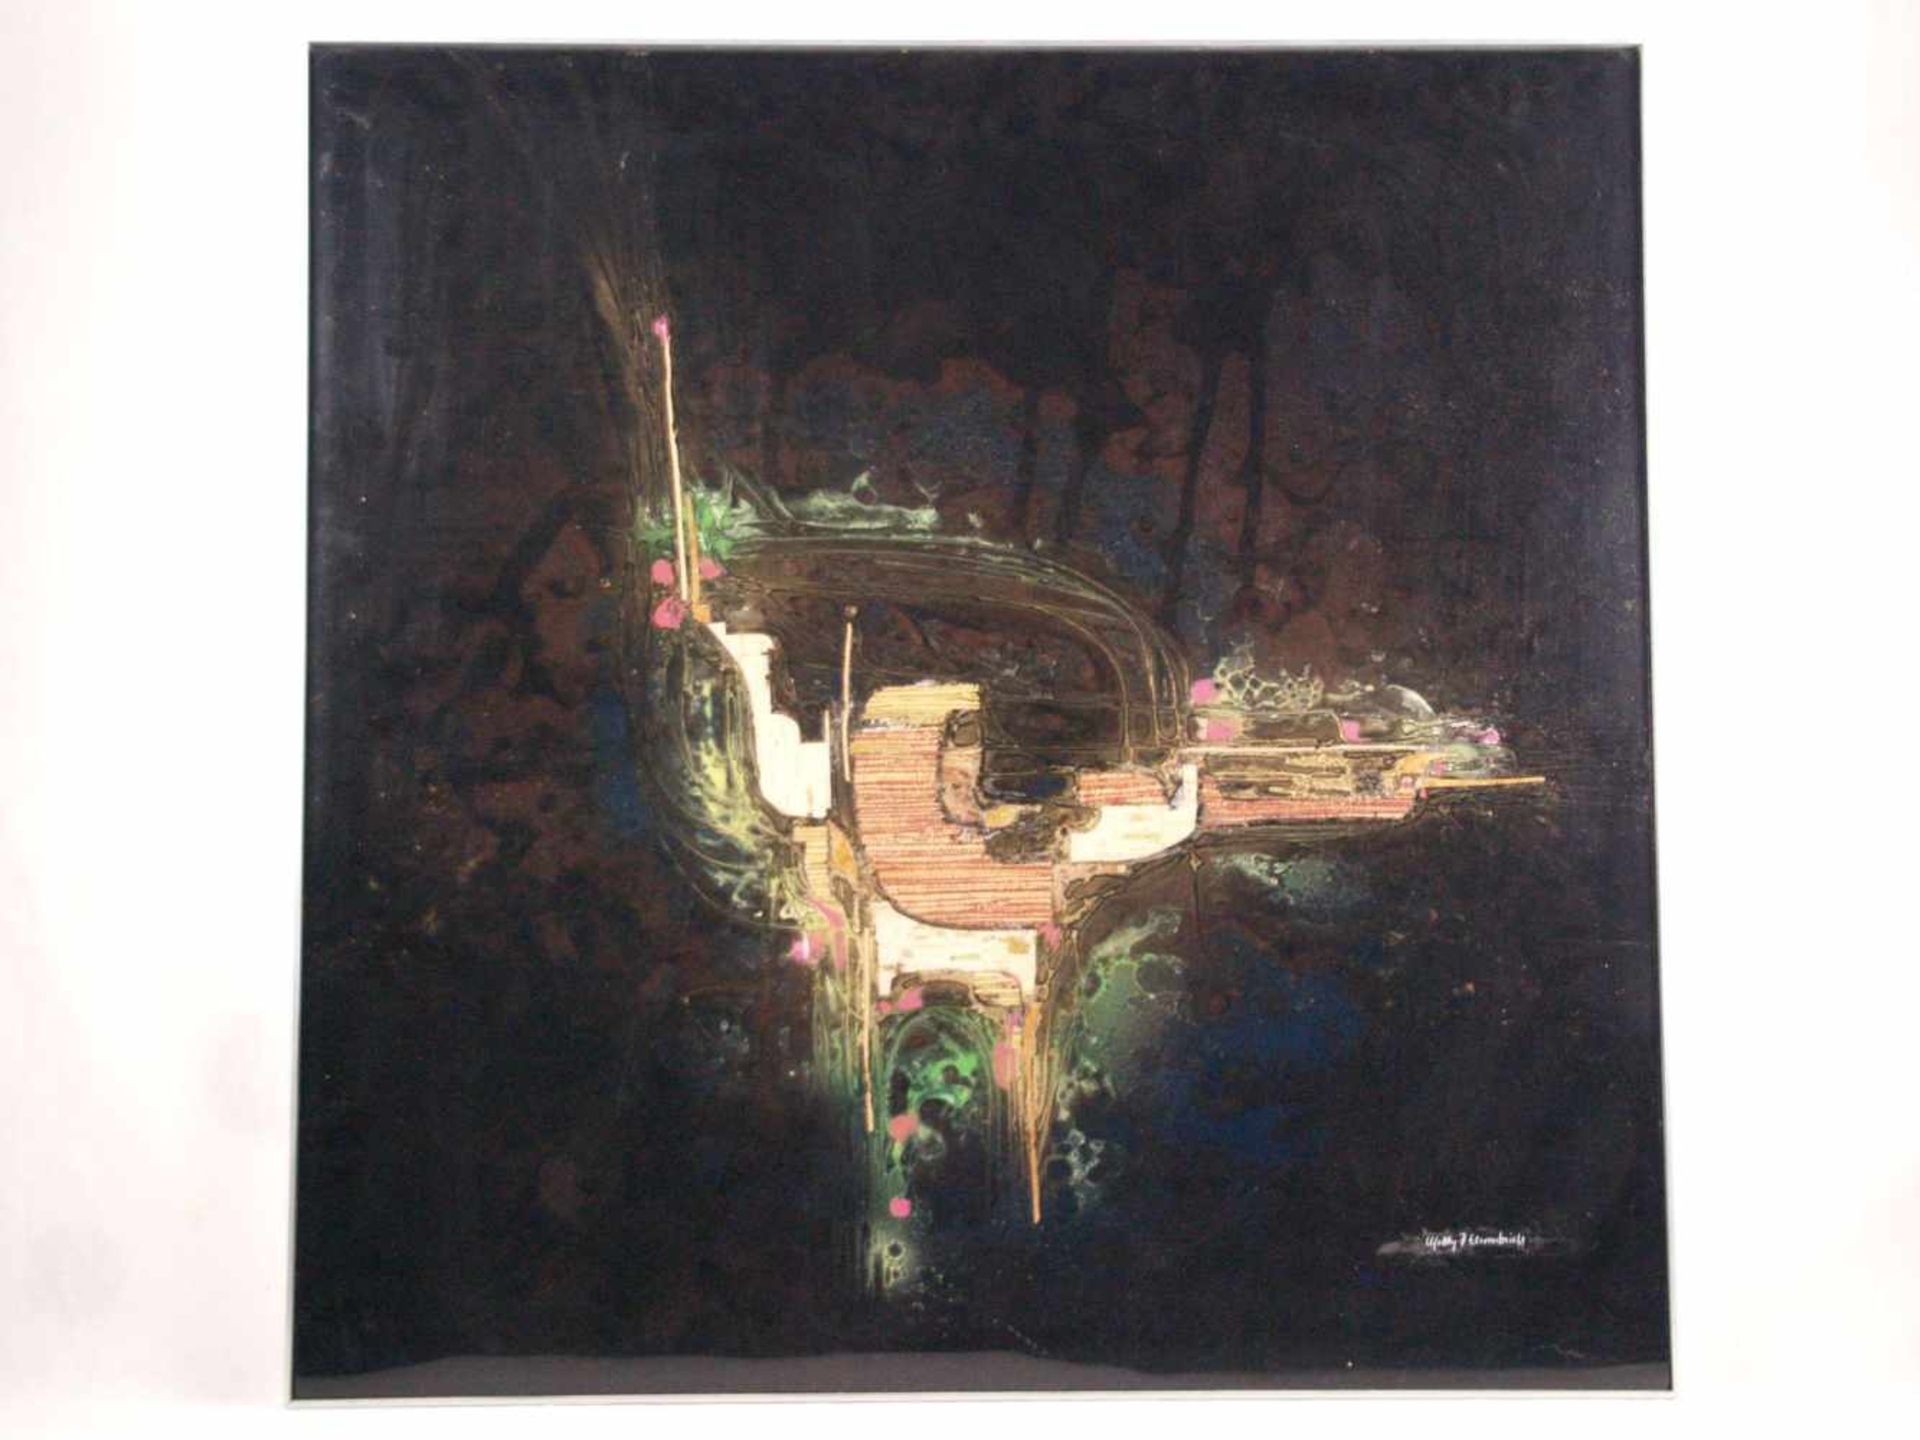 Ehrentreich, Mobby H. (*1940 Nördlingen) - Abstrakte Farbkomposition in Grün-, Violett- und